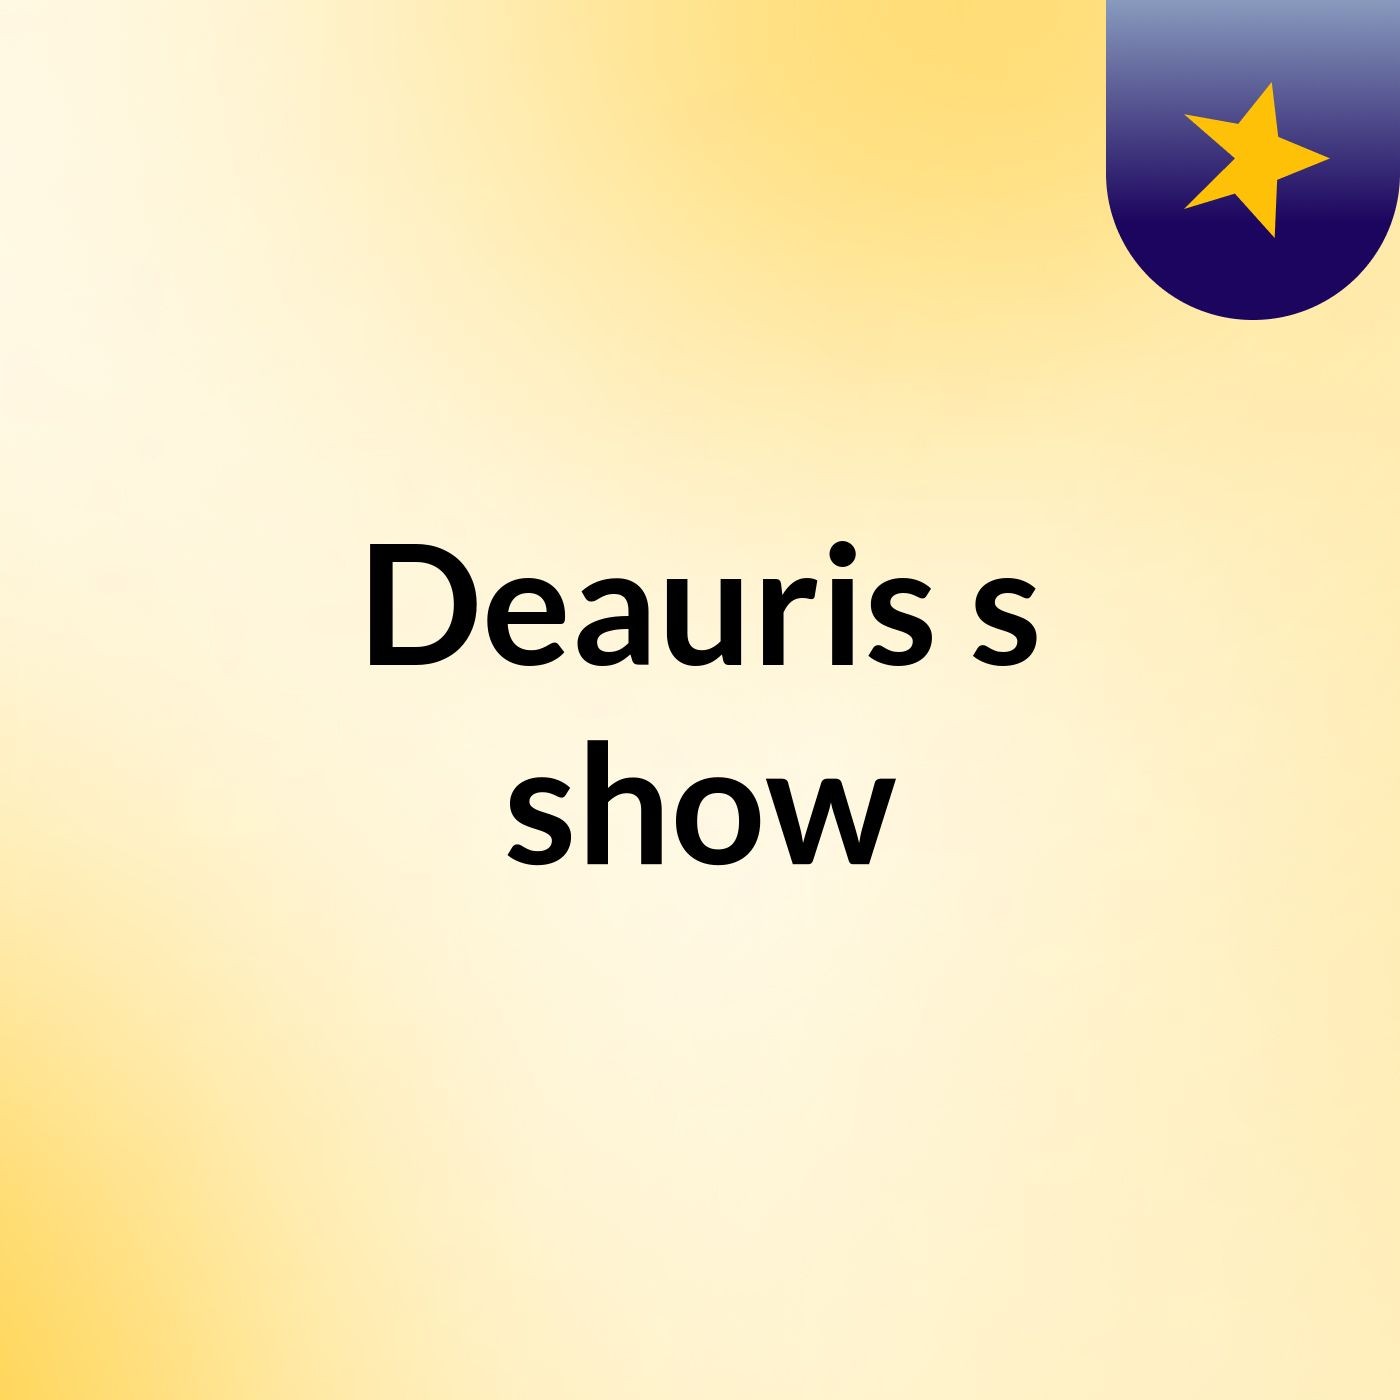 Deauris's show